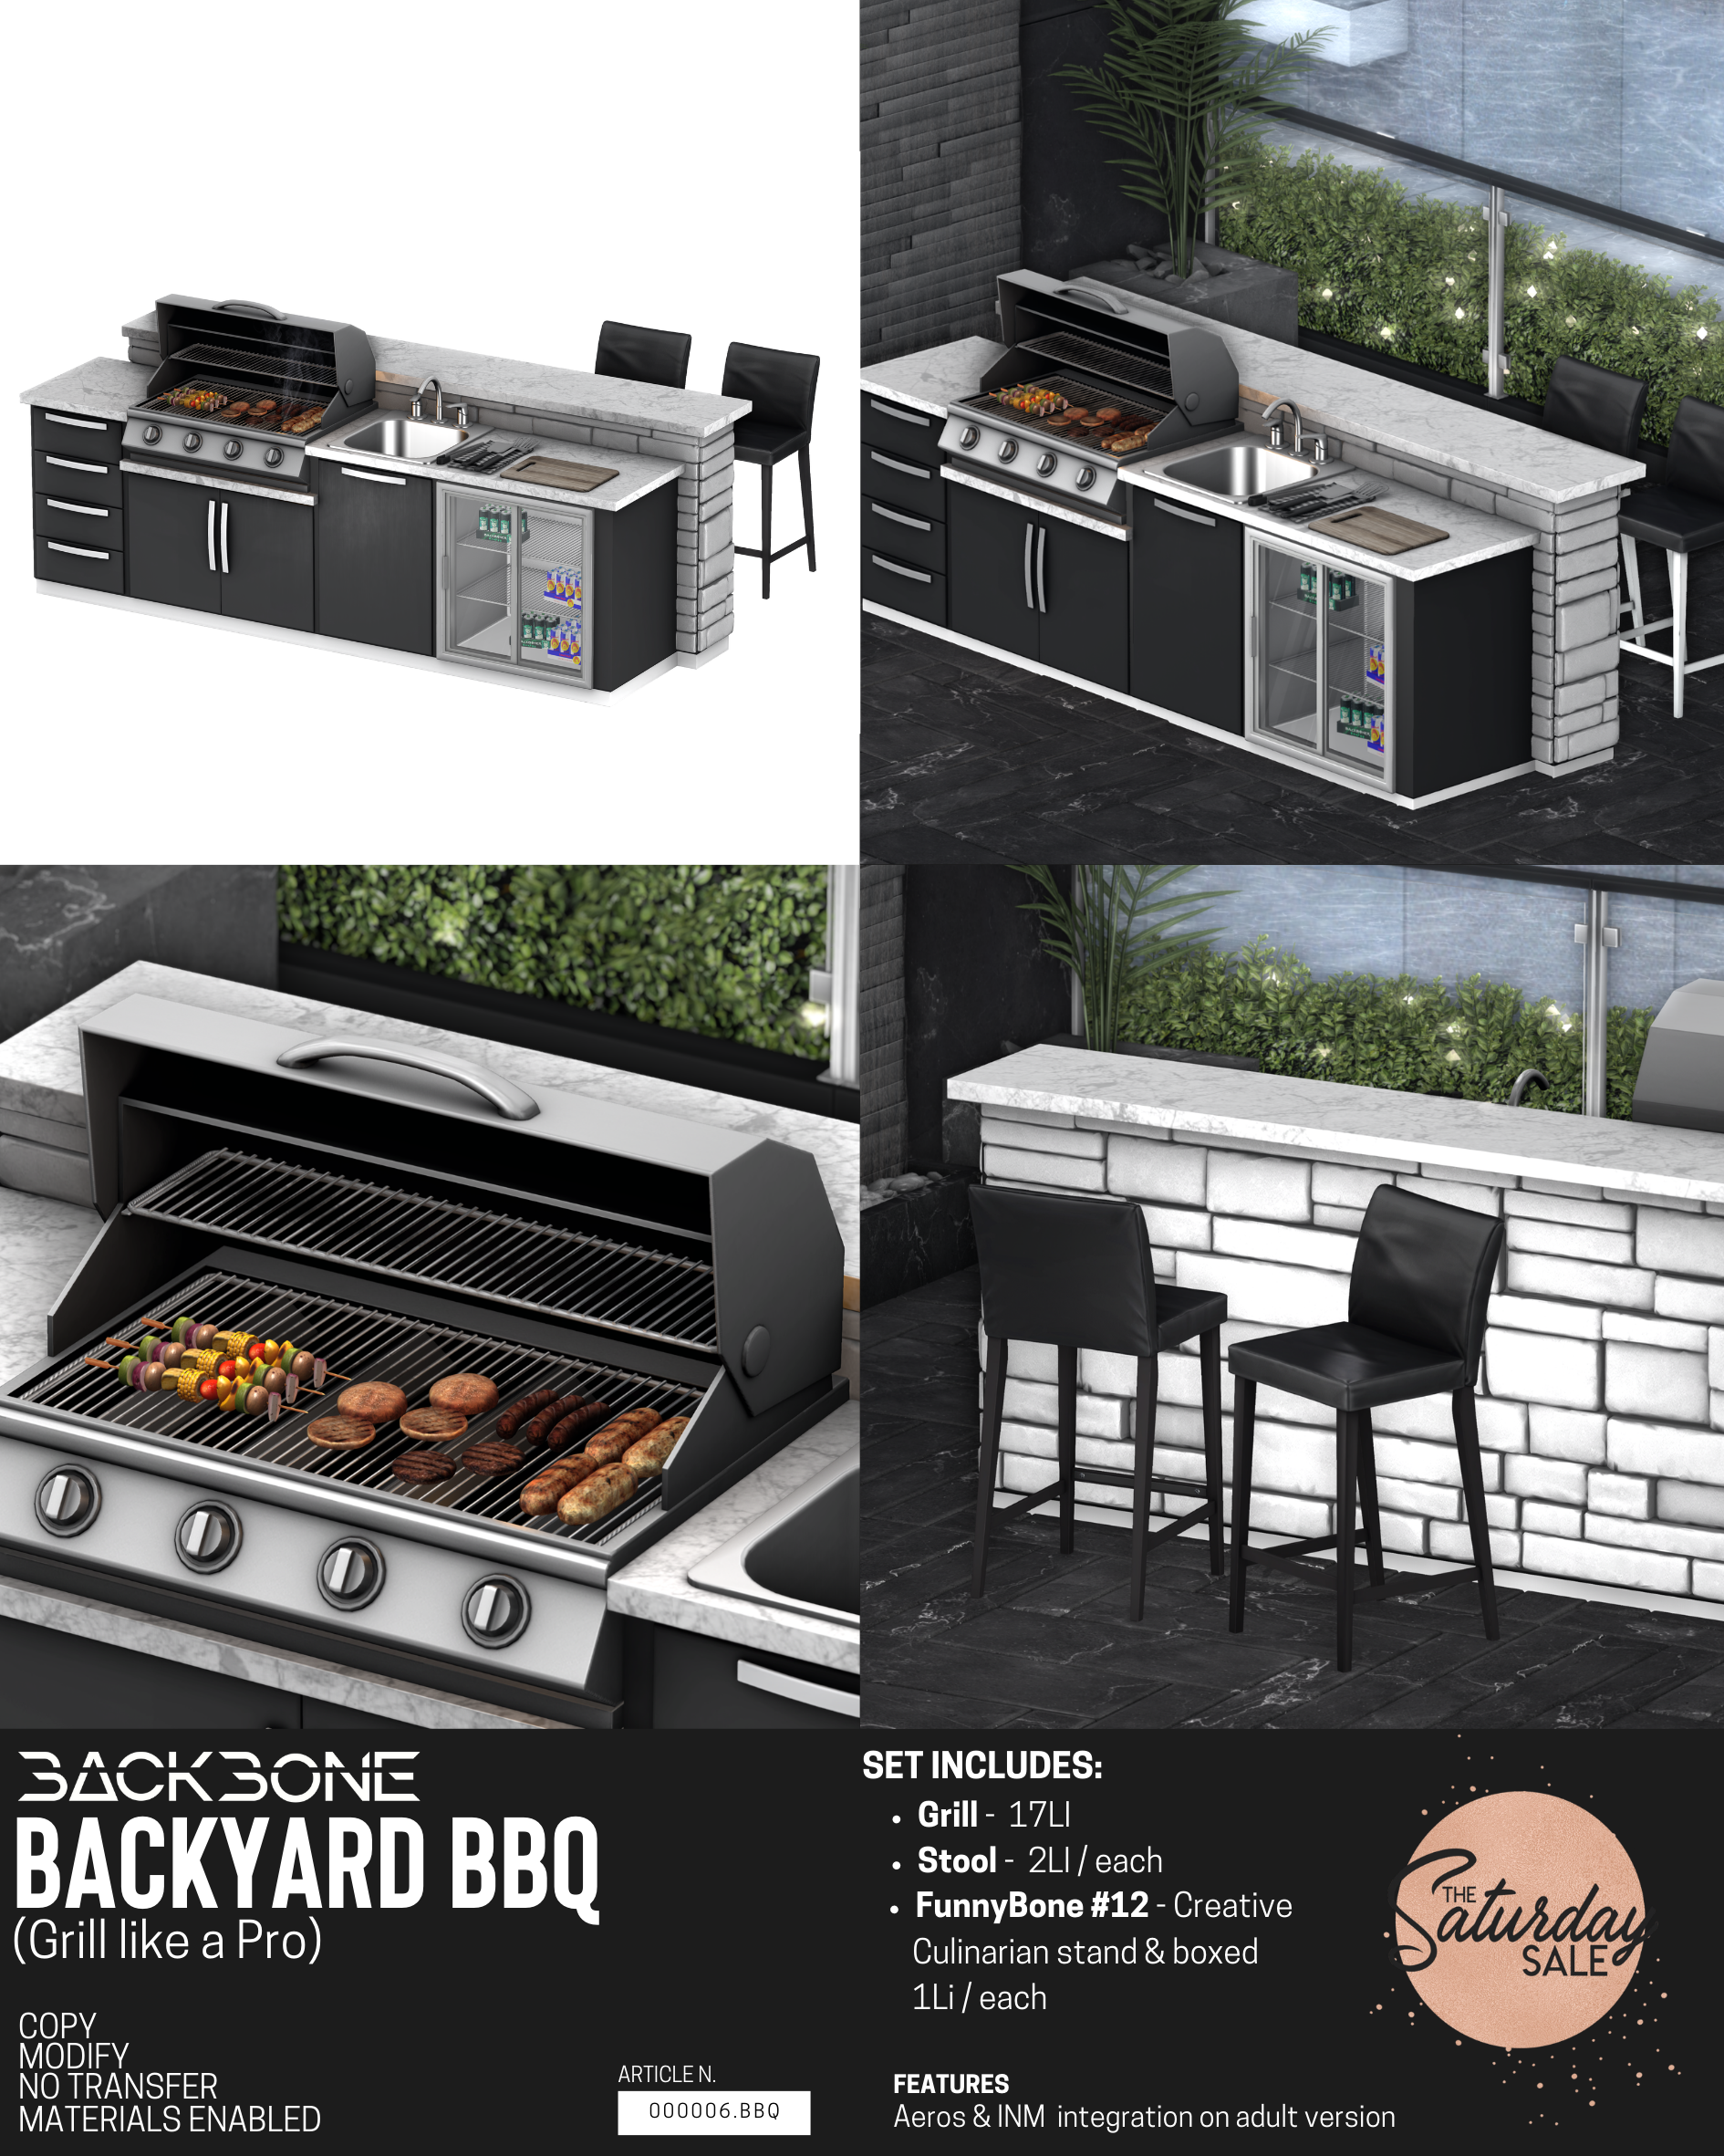 BackBone – Backyard BBQ